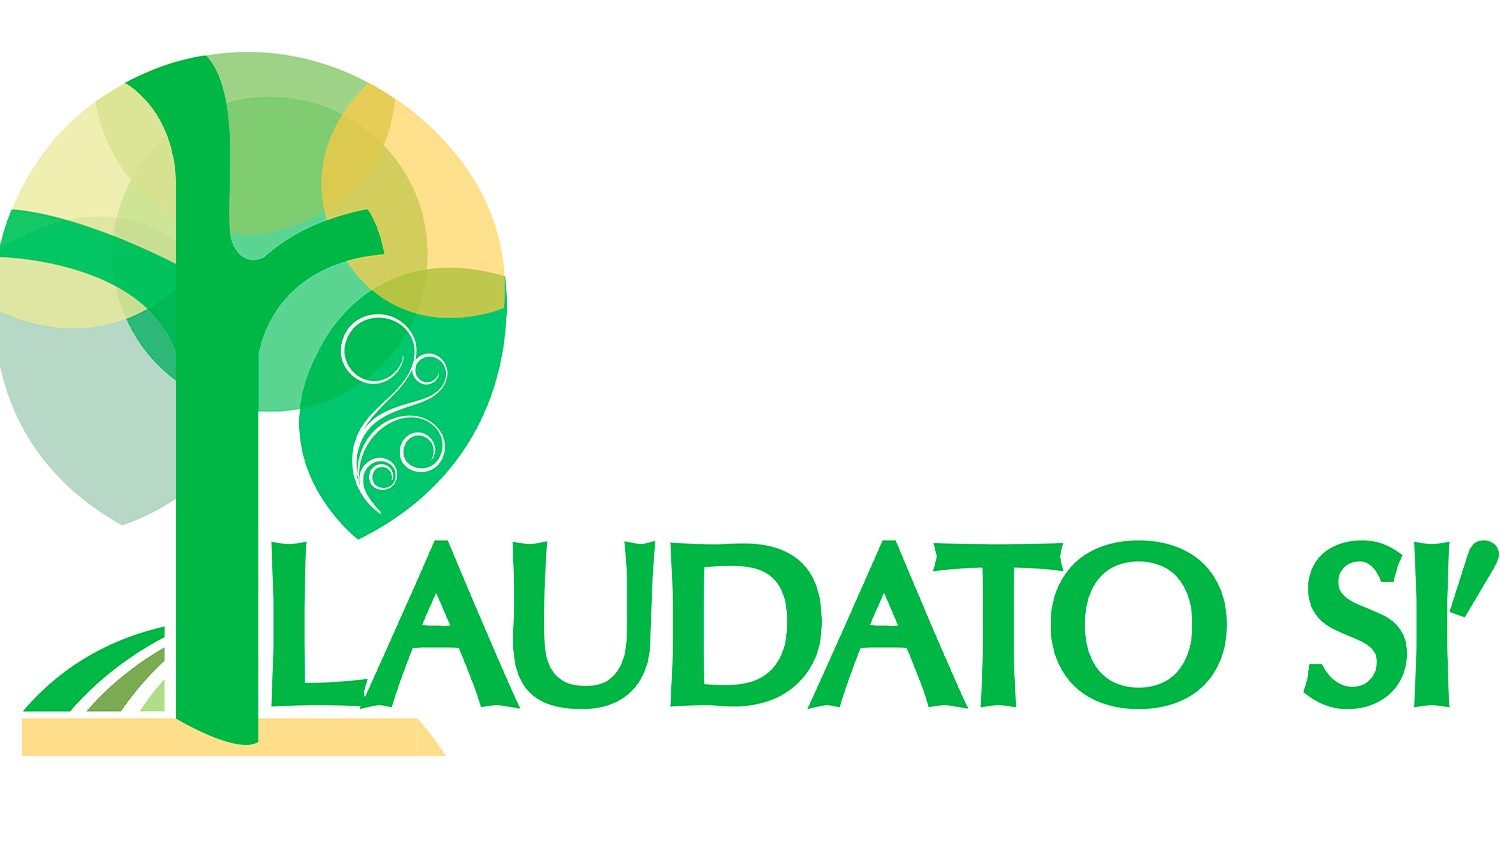 Международная конференция, посвящённая Laudato si’ проходит в Хорватии